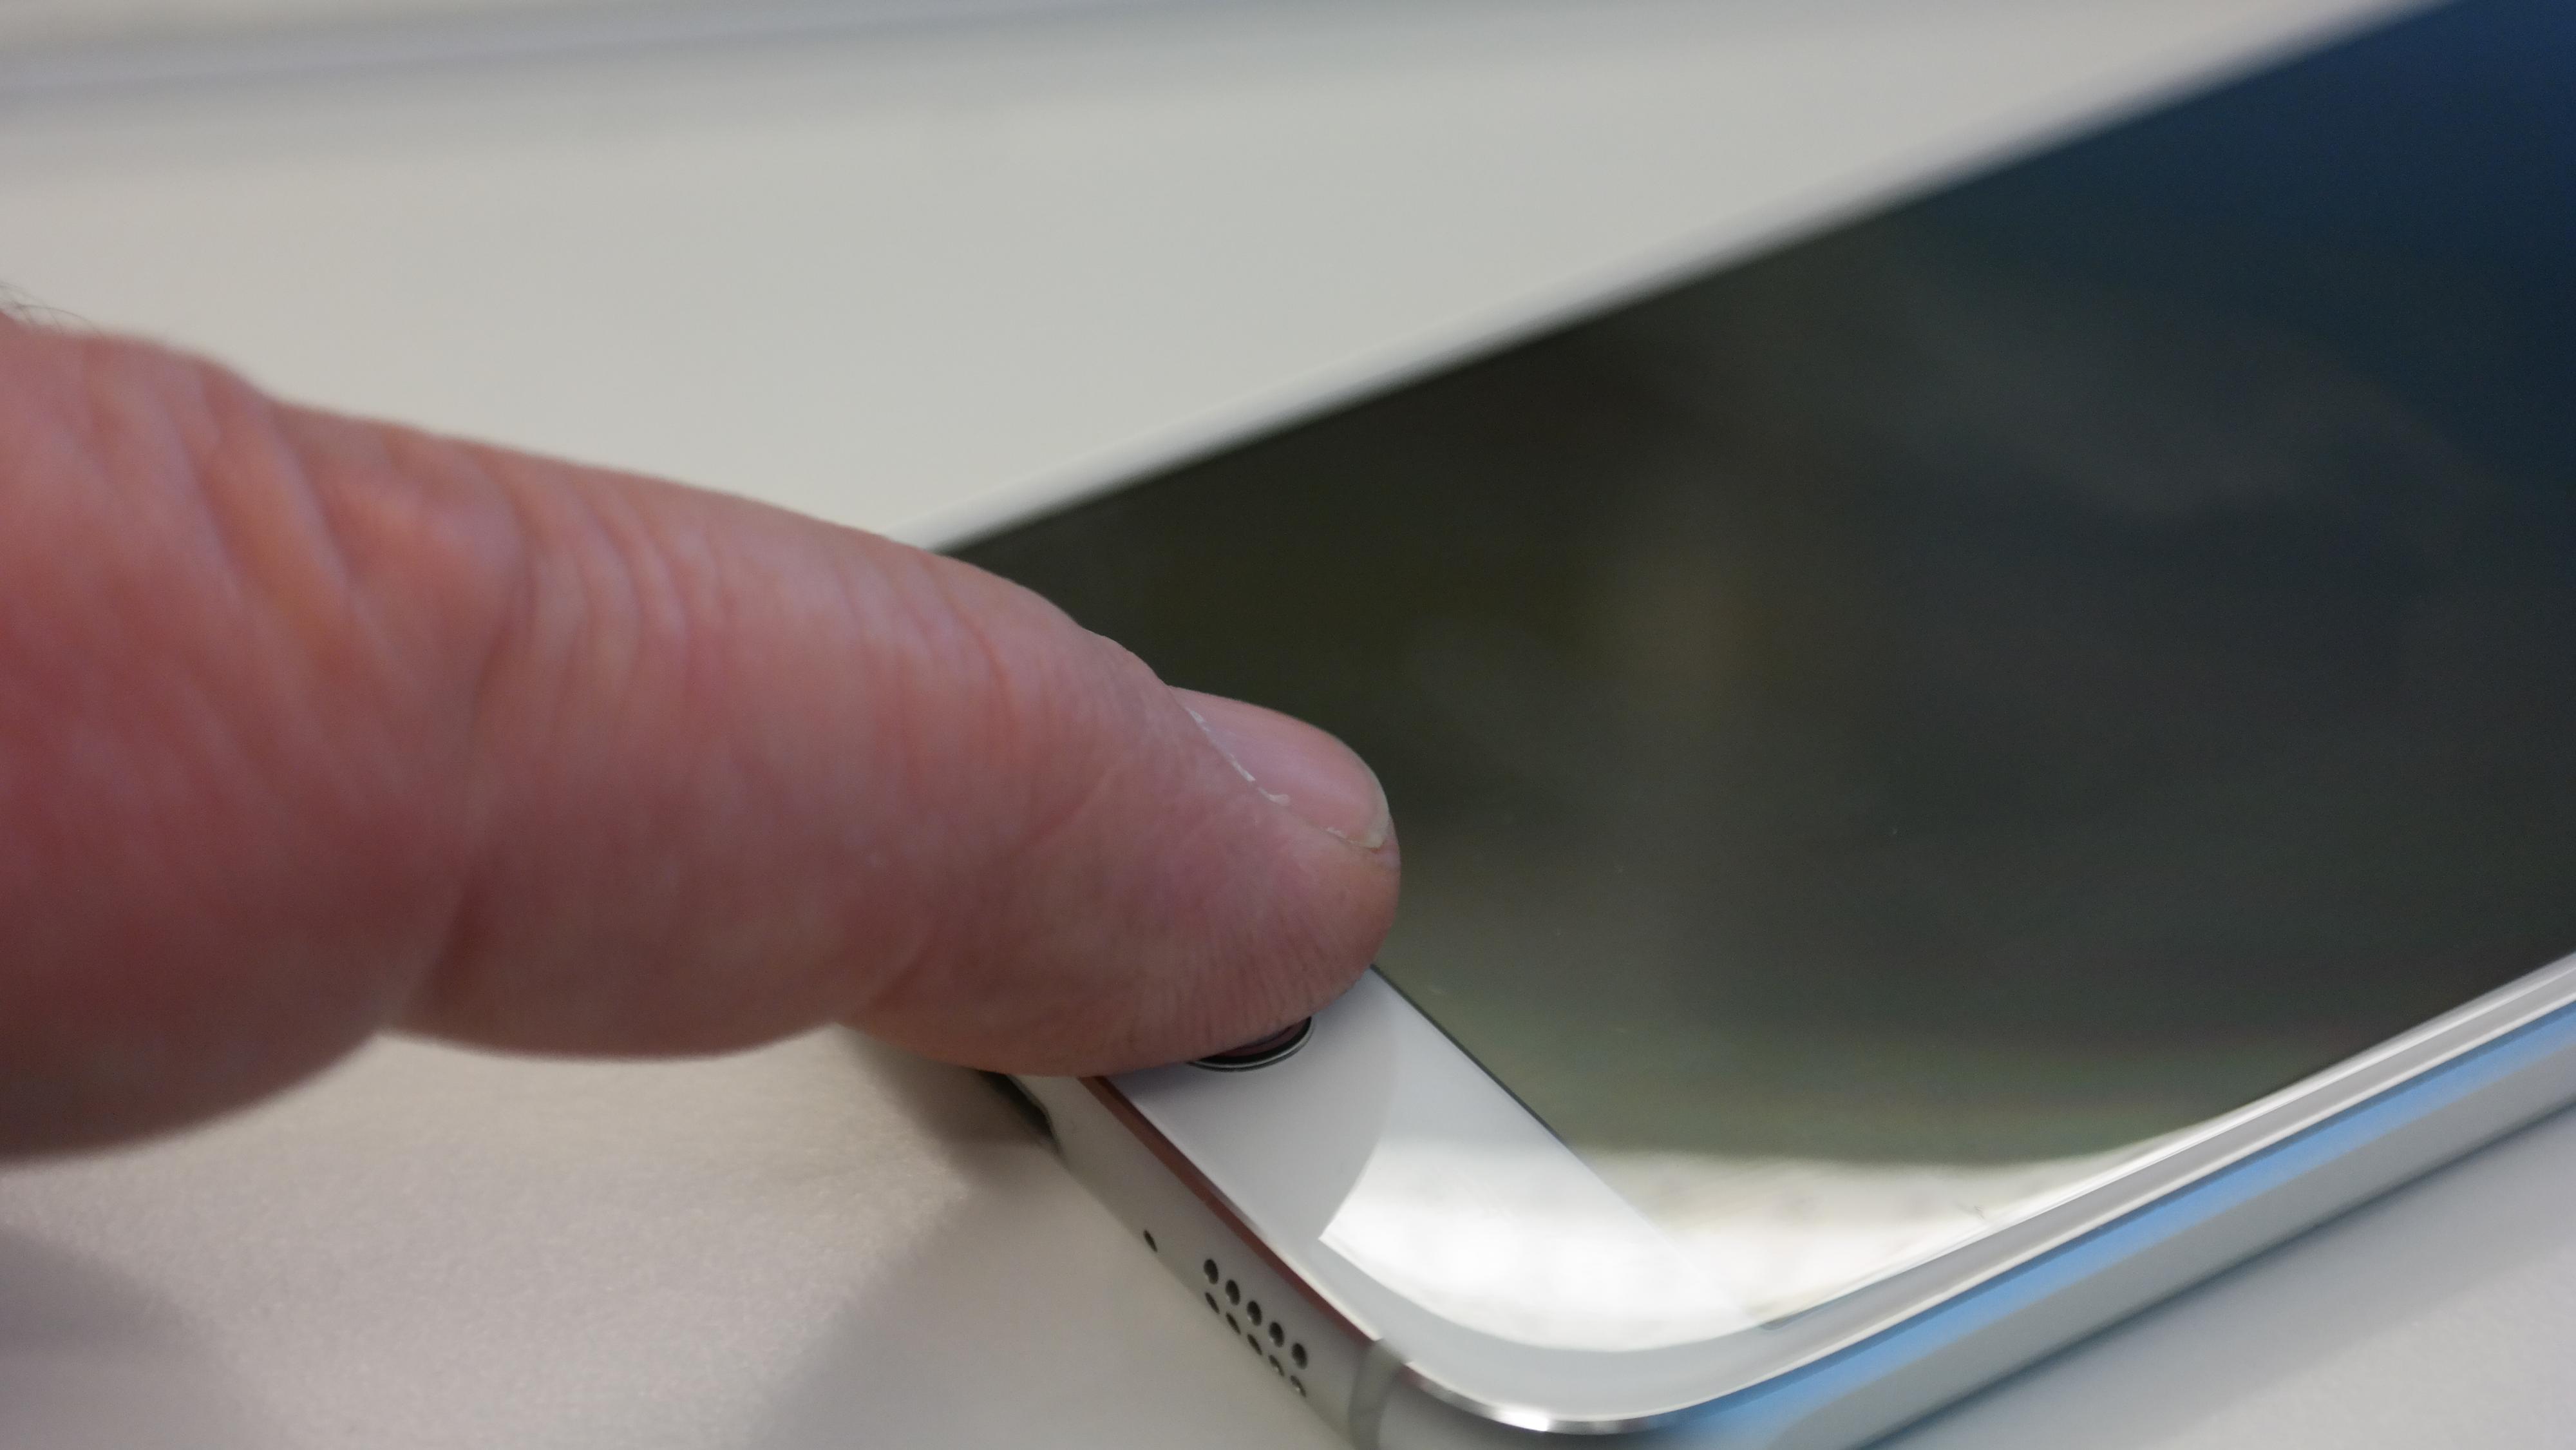 Fingeravtrykksensoren hindrer at andre kan misbruke telefonen din. I tillegg kan innholdet krypteres. Foto: Espen Irwing Swang, Tek.no